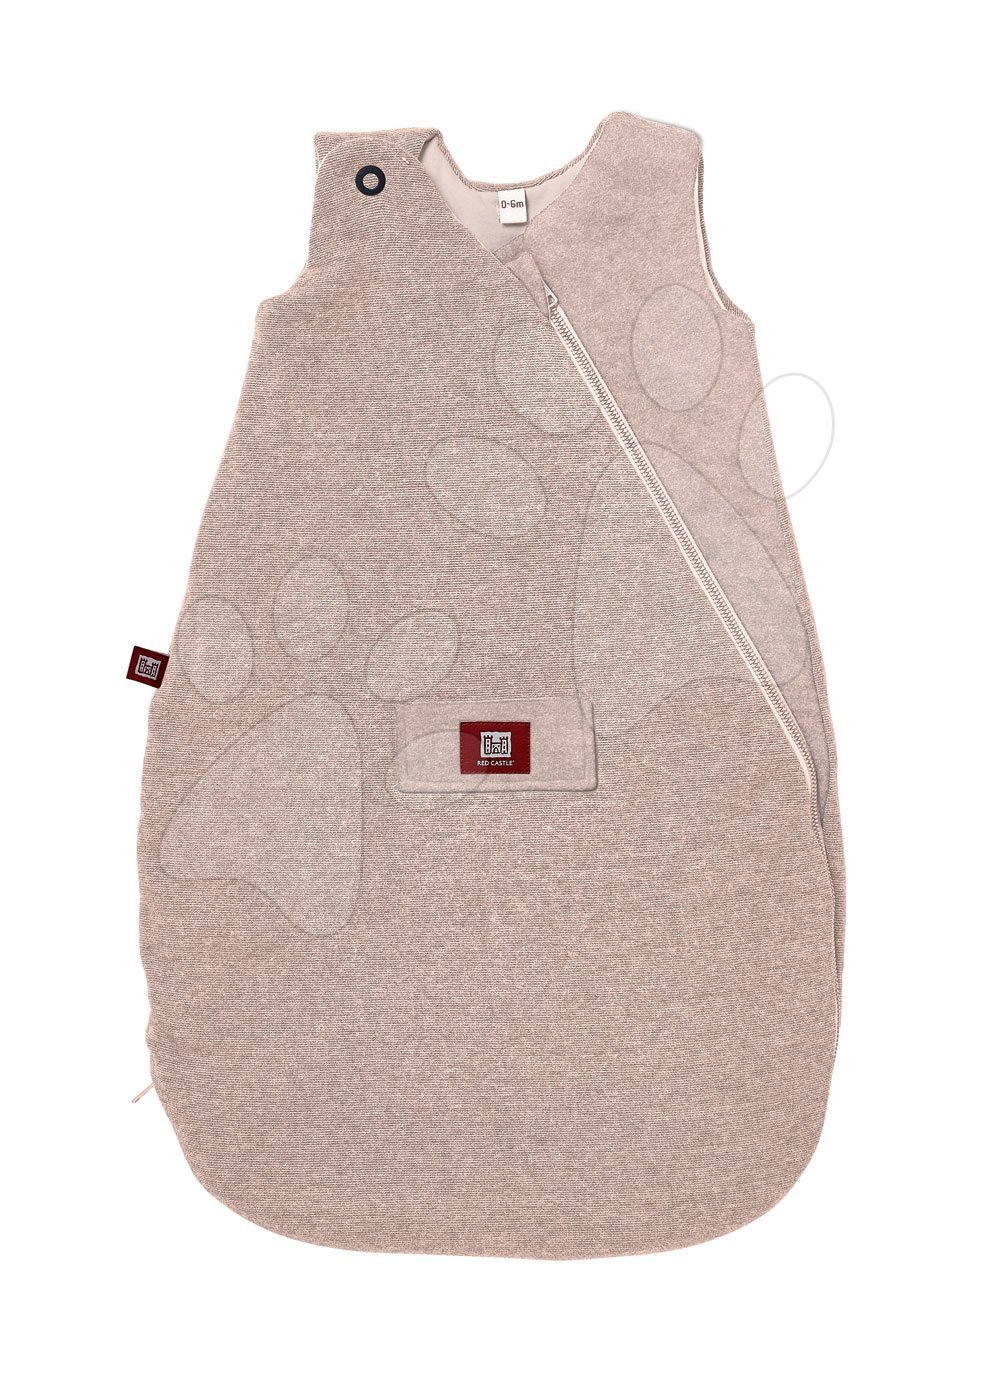 Dojčenský spací vak zimný - Dojčenský spací vak Red Castle Fine Line Collection zimný krémový od 6-12 mesiacov